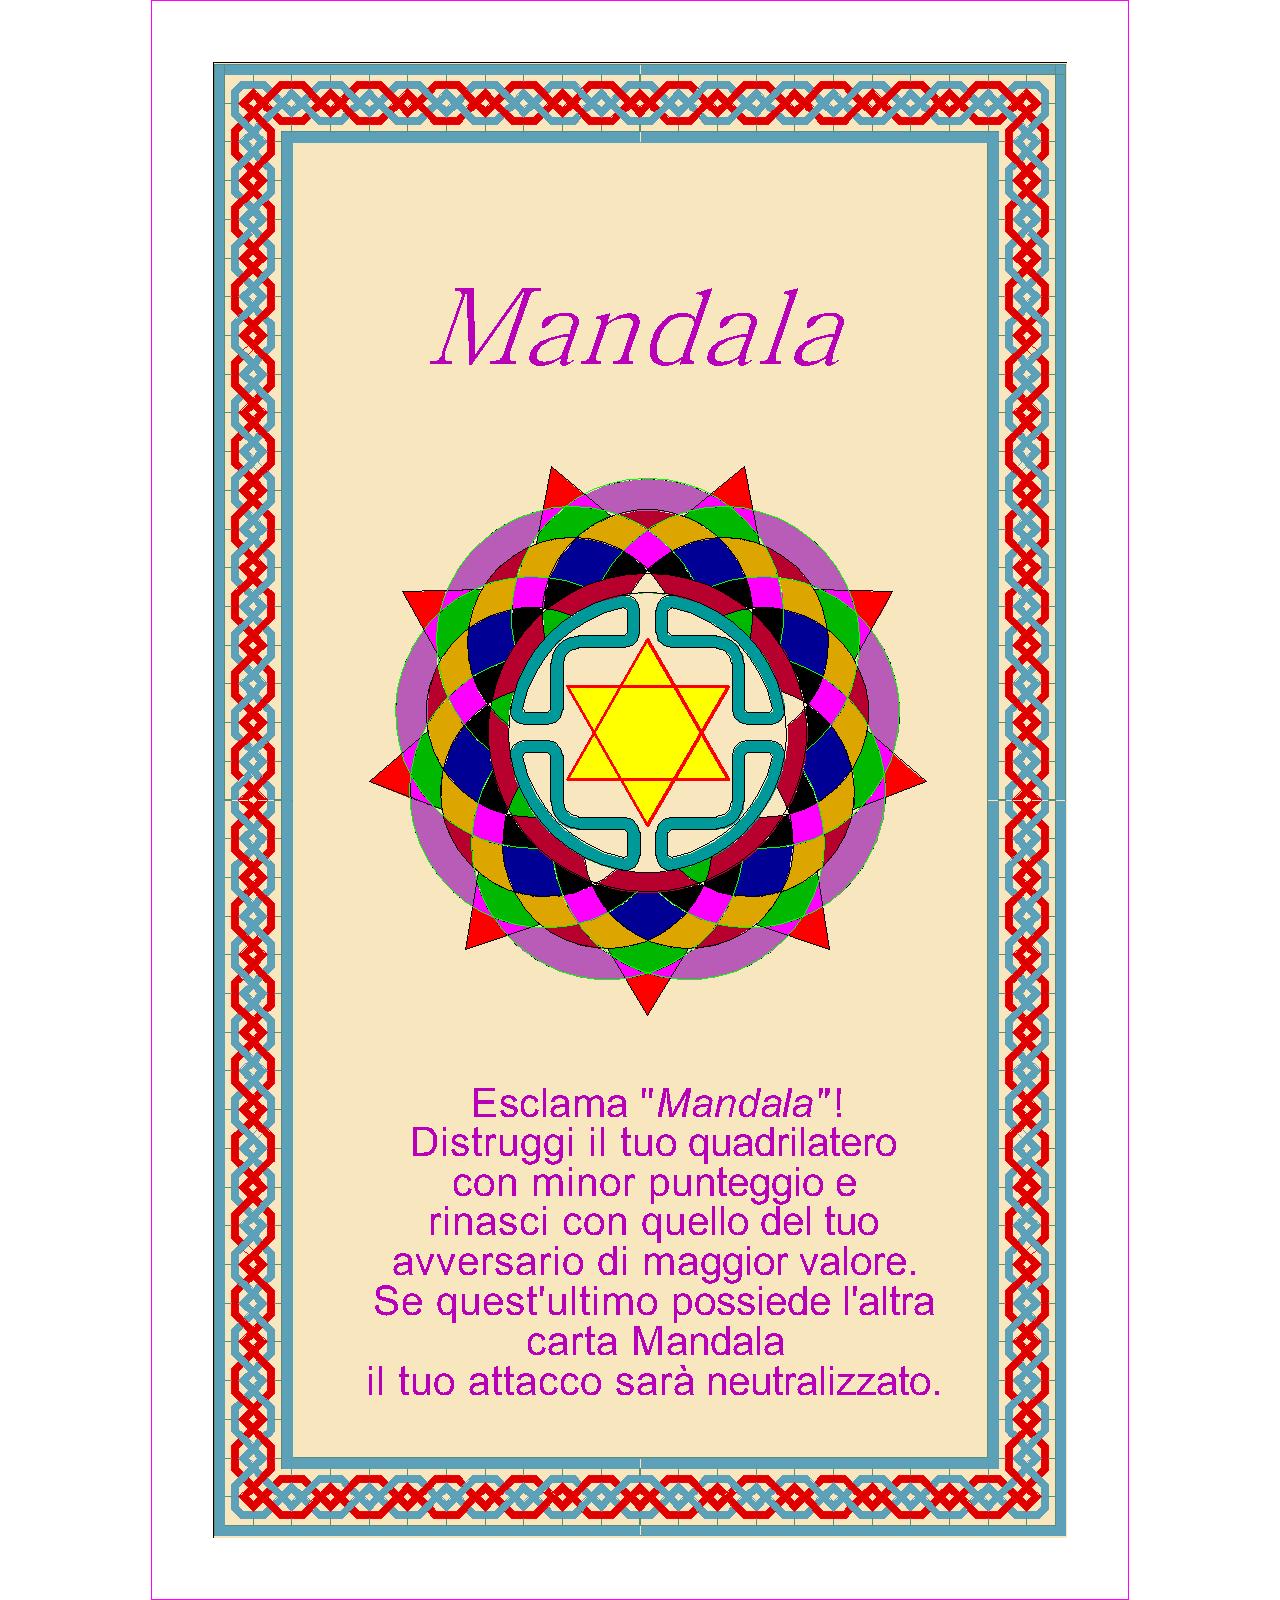 015. Mandala b-Model (Coach M.C. Petroli)